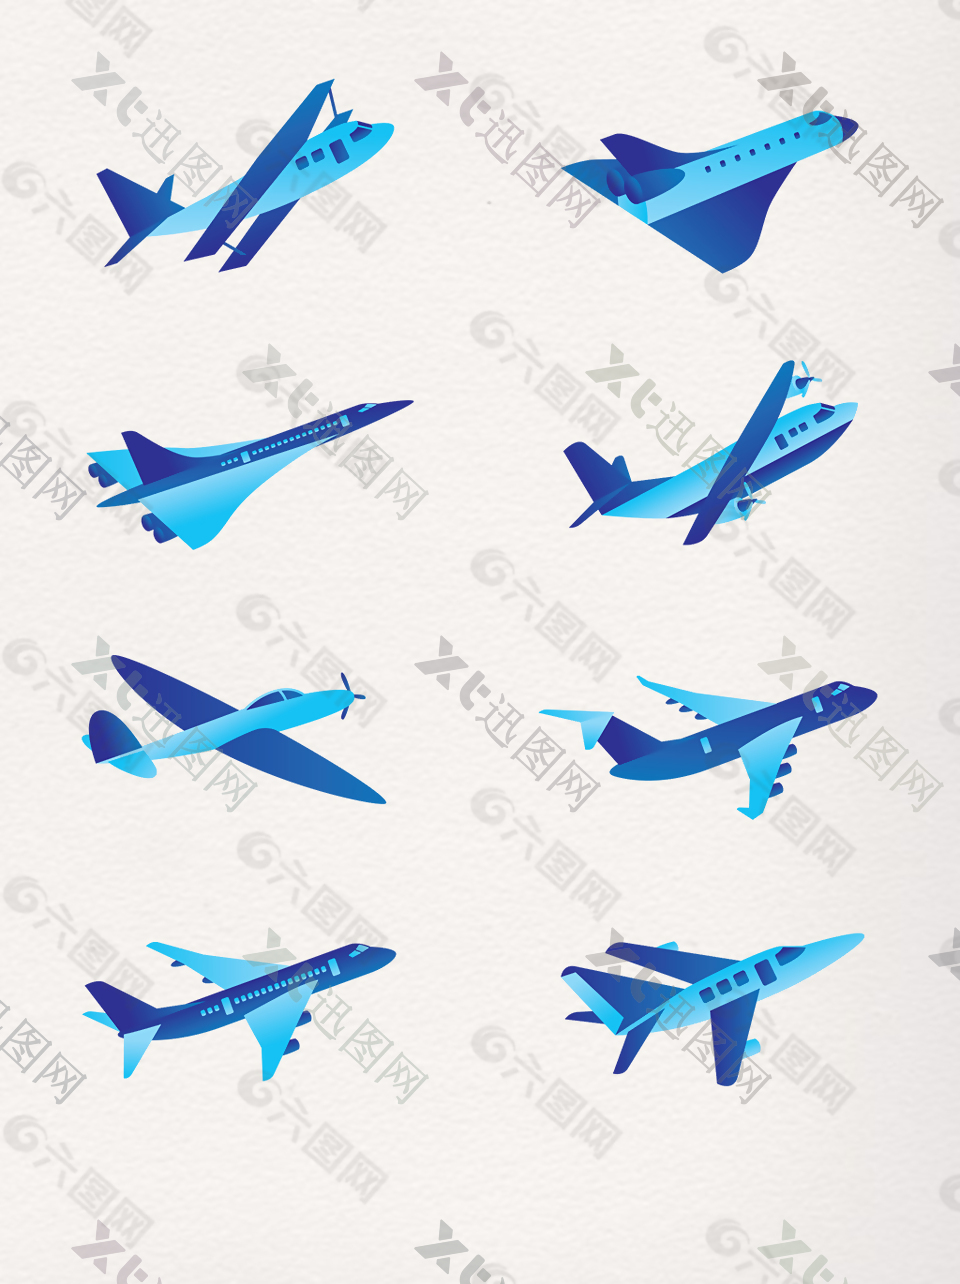 一组蓝色卡通客机图案